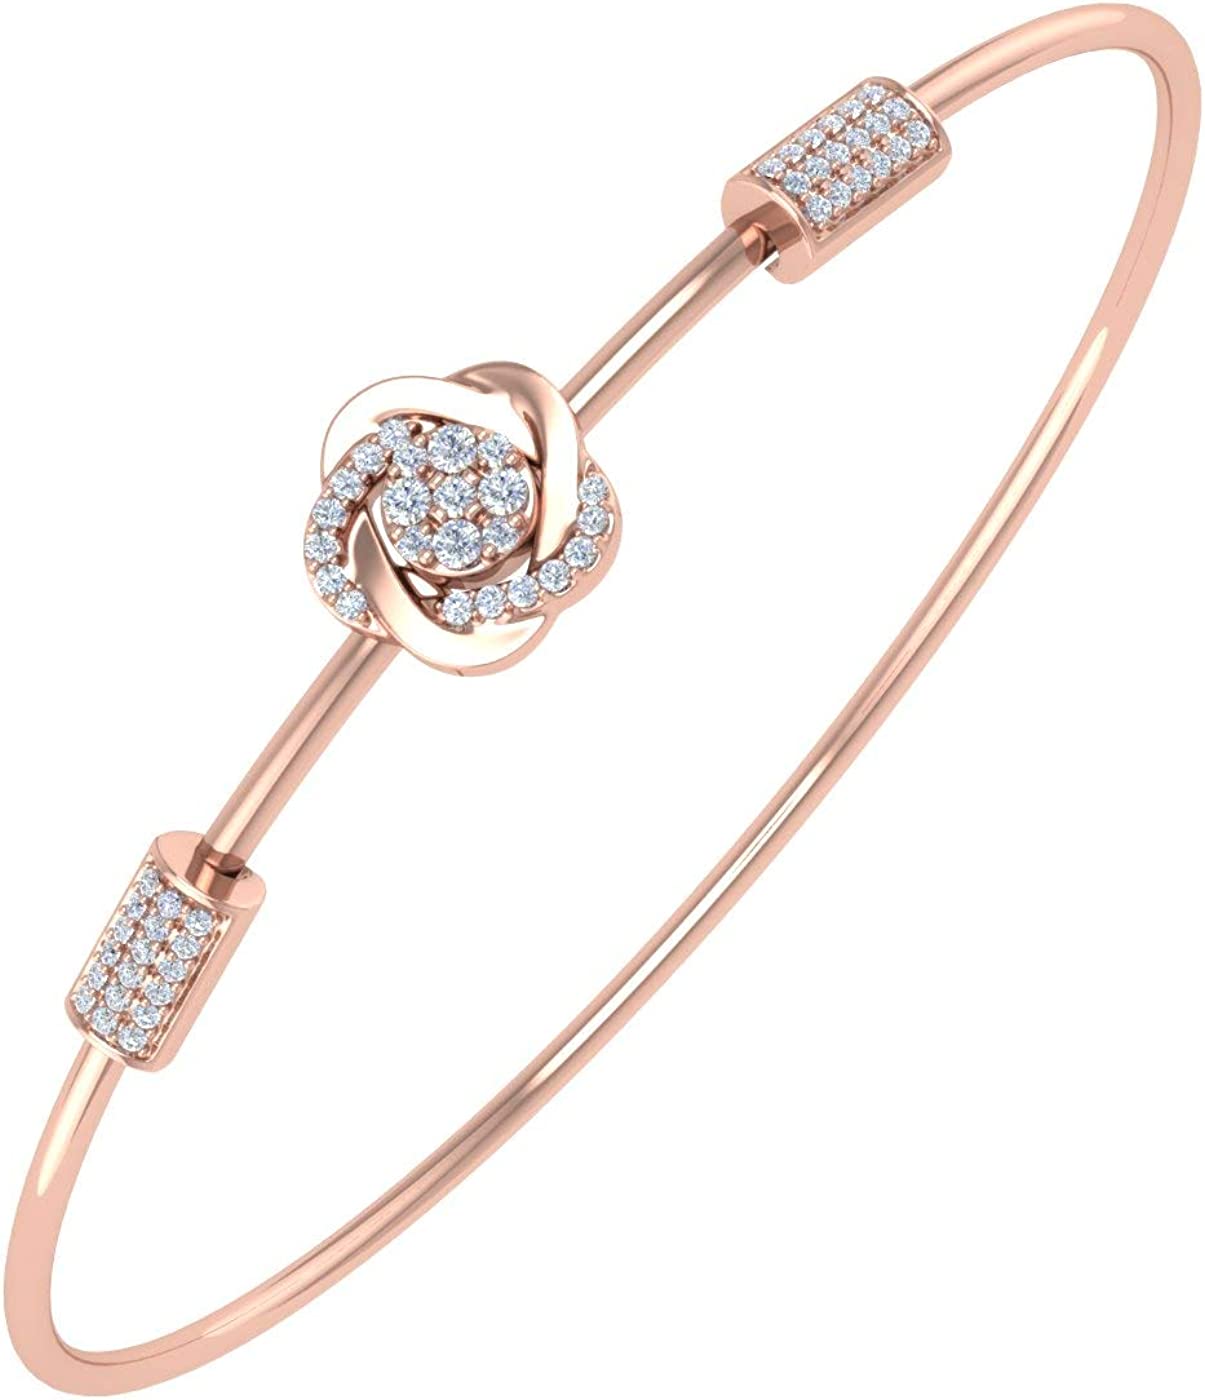 1/5 Carat Diamond Floral Bangle Bracelet in 10K Gold or 14K Gold and Steel